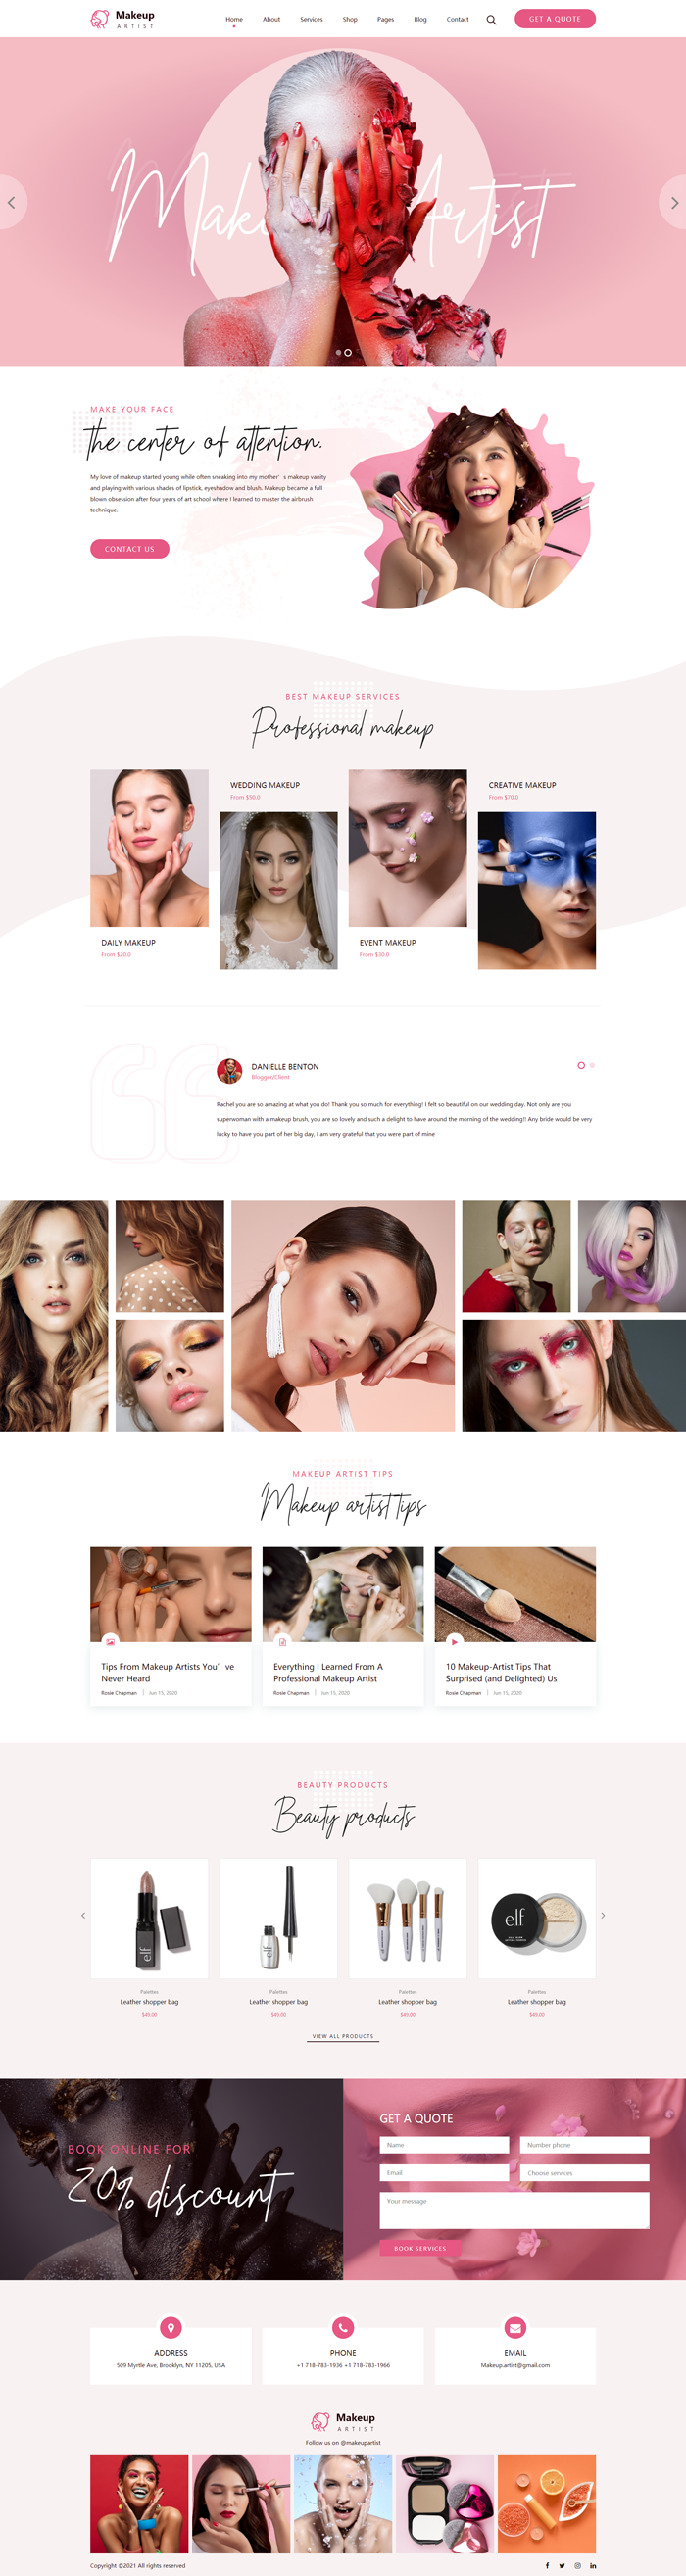 现代化妆品电商美妆行业网站模板